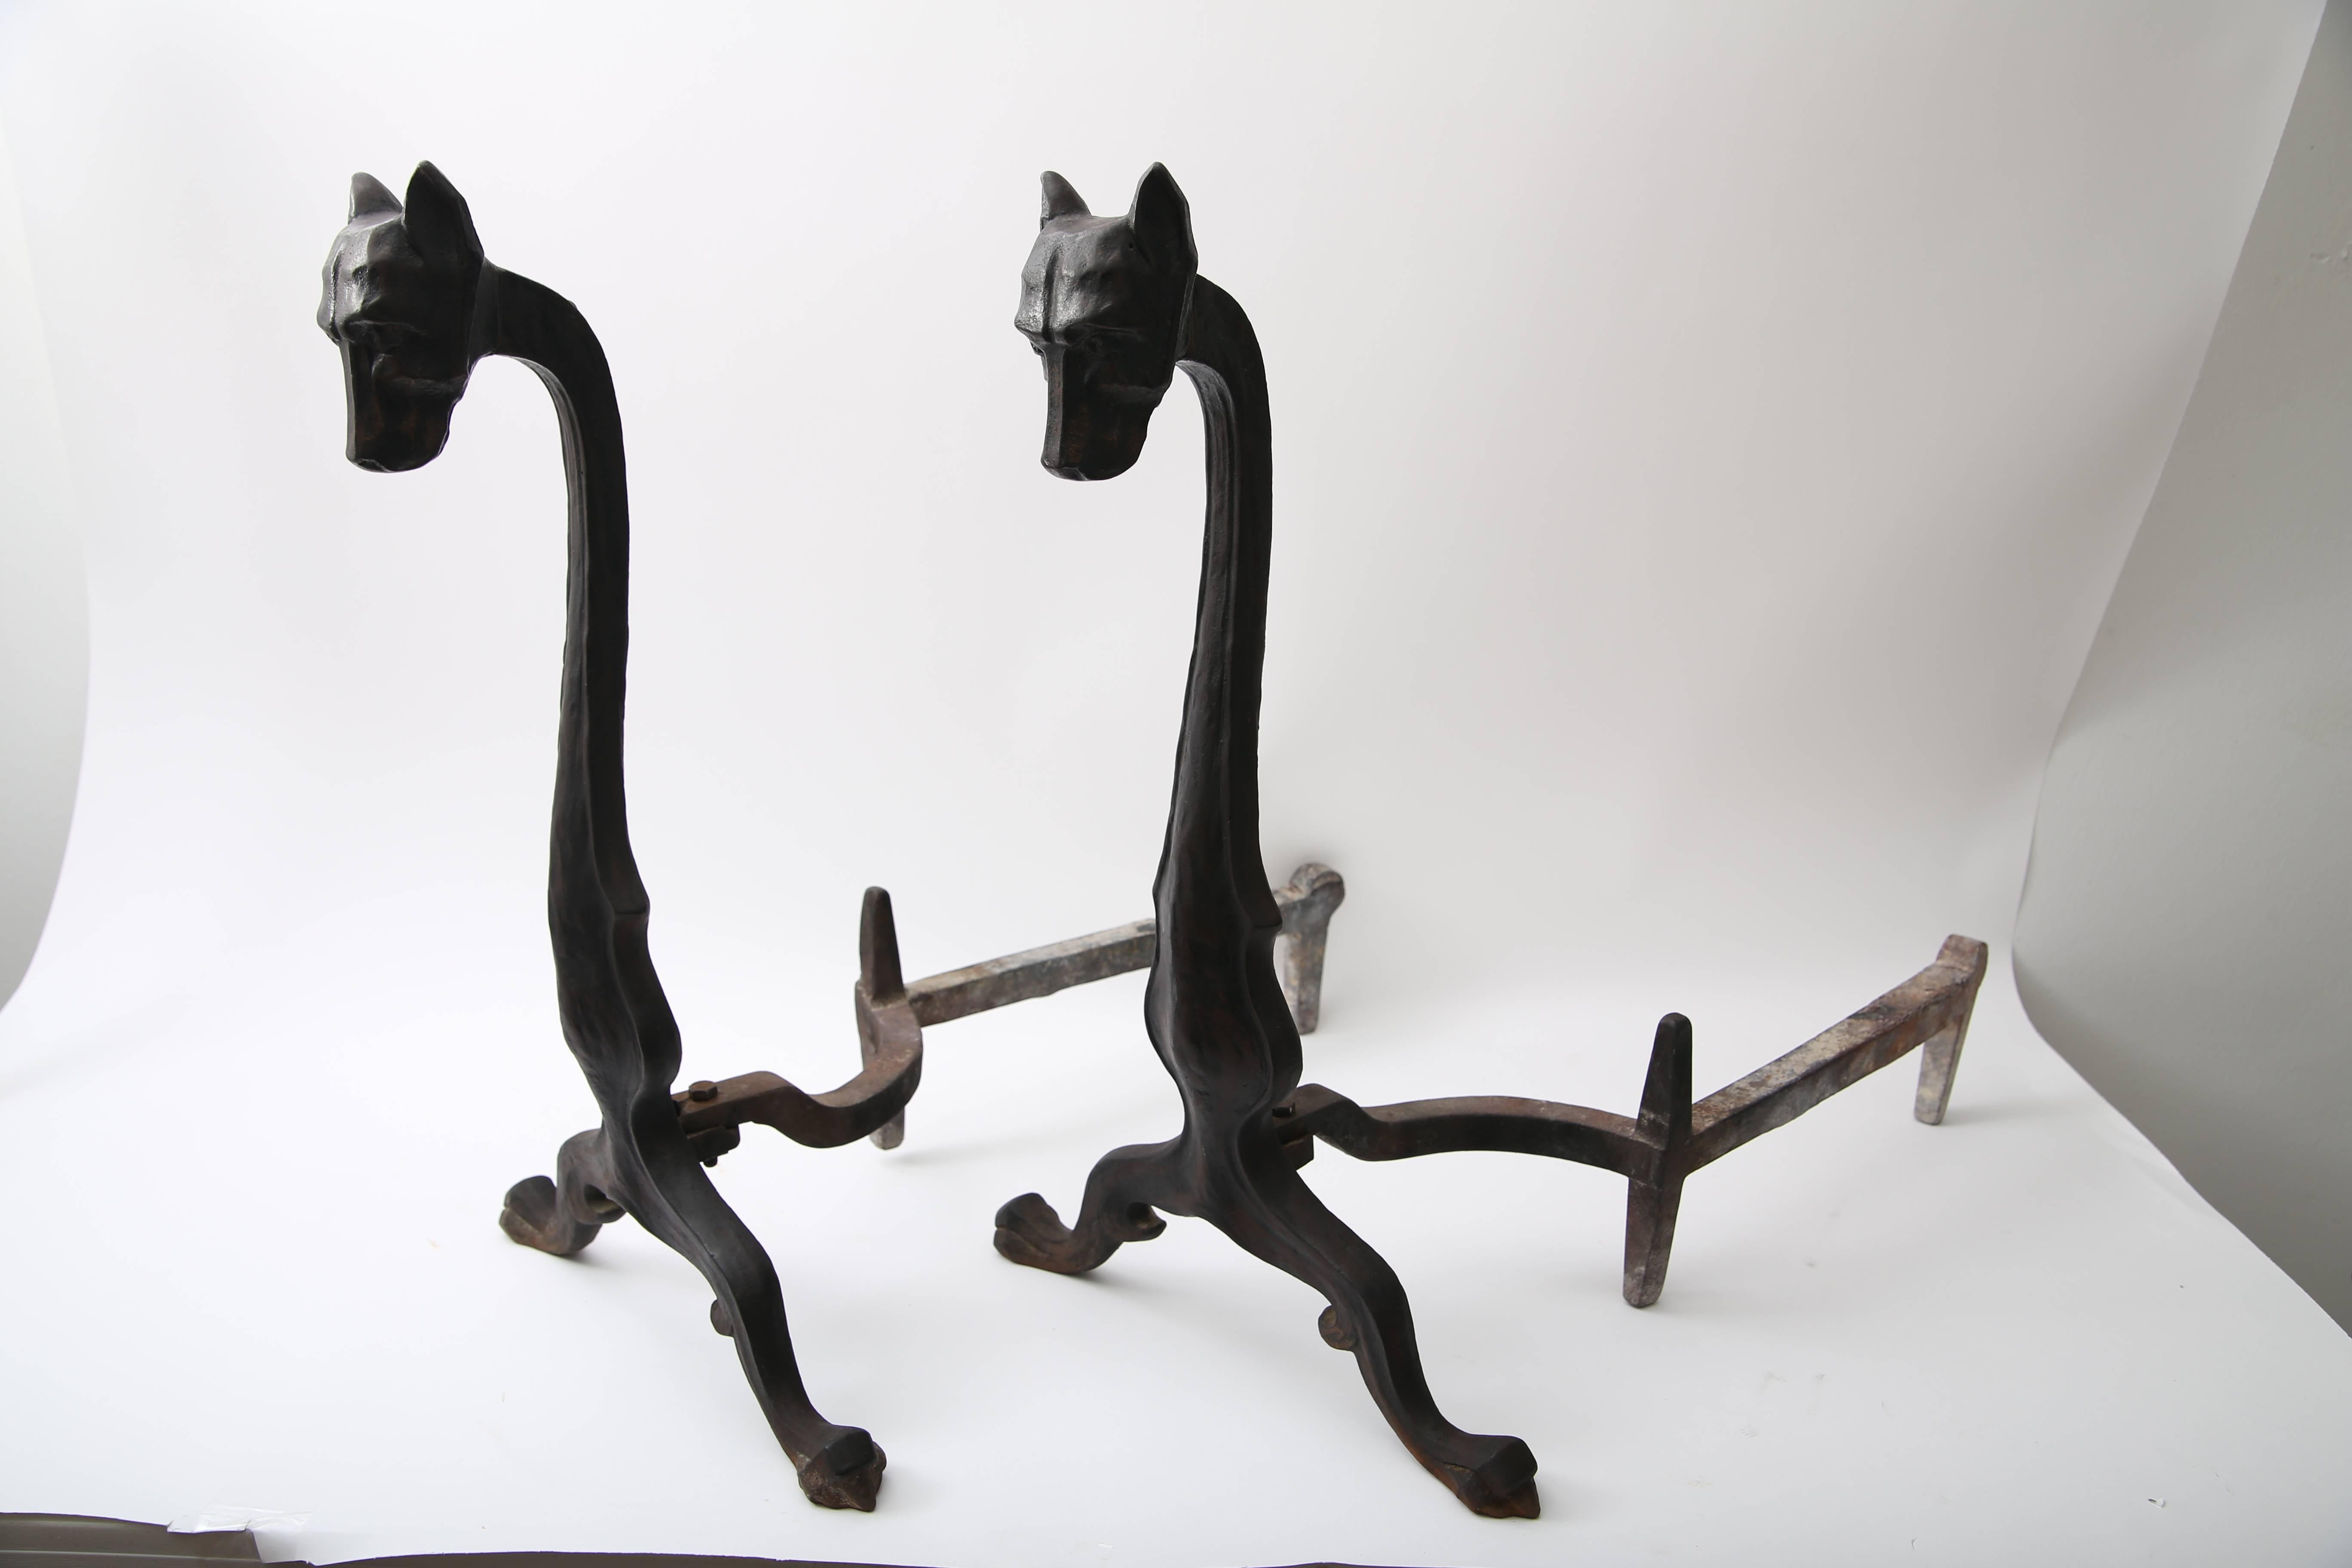 Dieses Paar Kaminbögen im Art-déco-Stil wurde von Bradley und Hubbard entworfen und ist aus handgeschmiedetem Eisen in Form von stilisierten Hunden gefertigt. 

ZU IHRER INFORMATION: 
Bradley & Hubbard Fertigungsgesellschaft
Schicksal Verkauft an